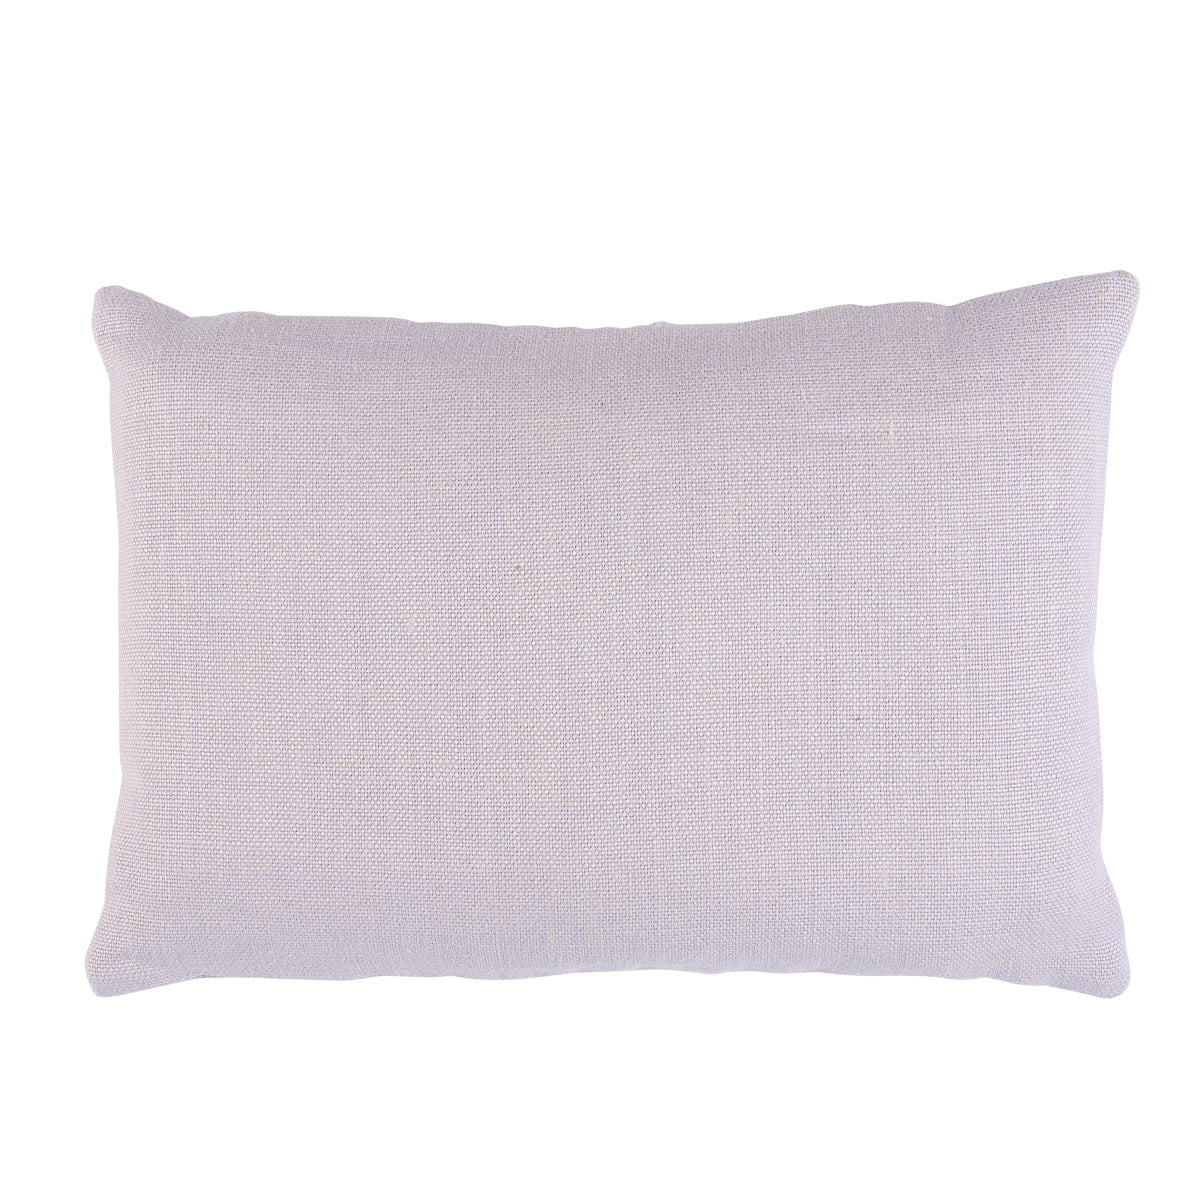 Ashoka Pillow | Lilac & Cream